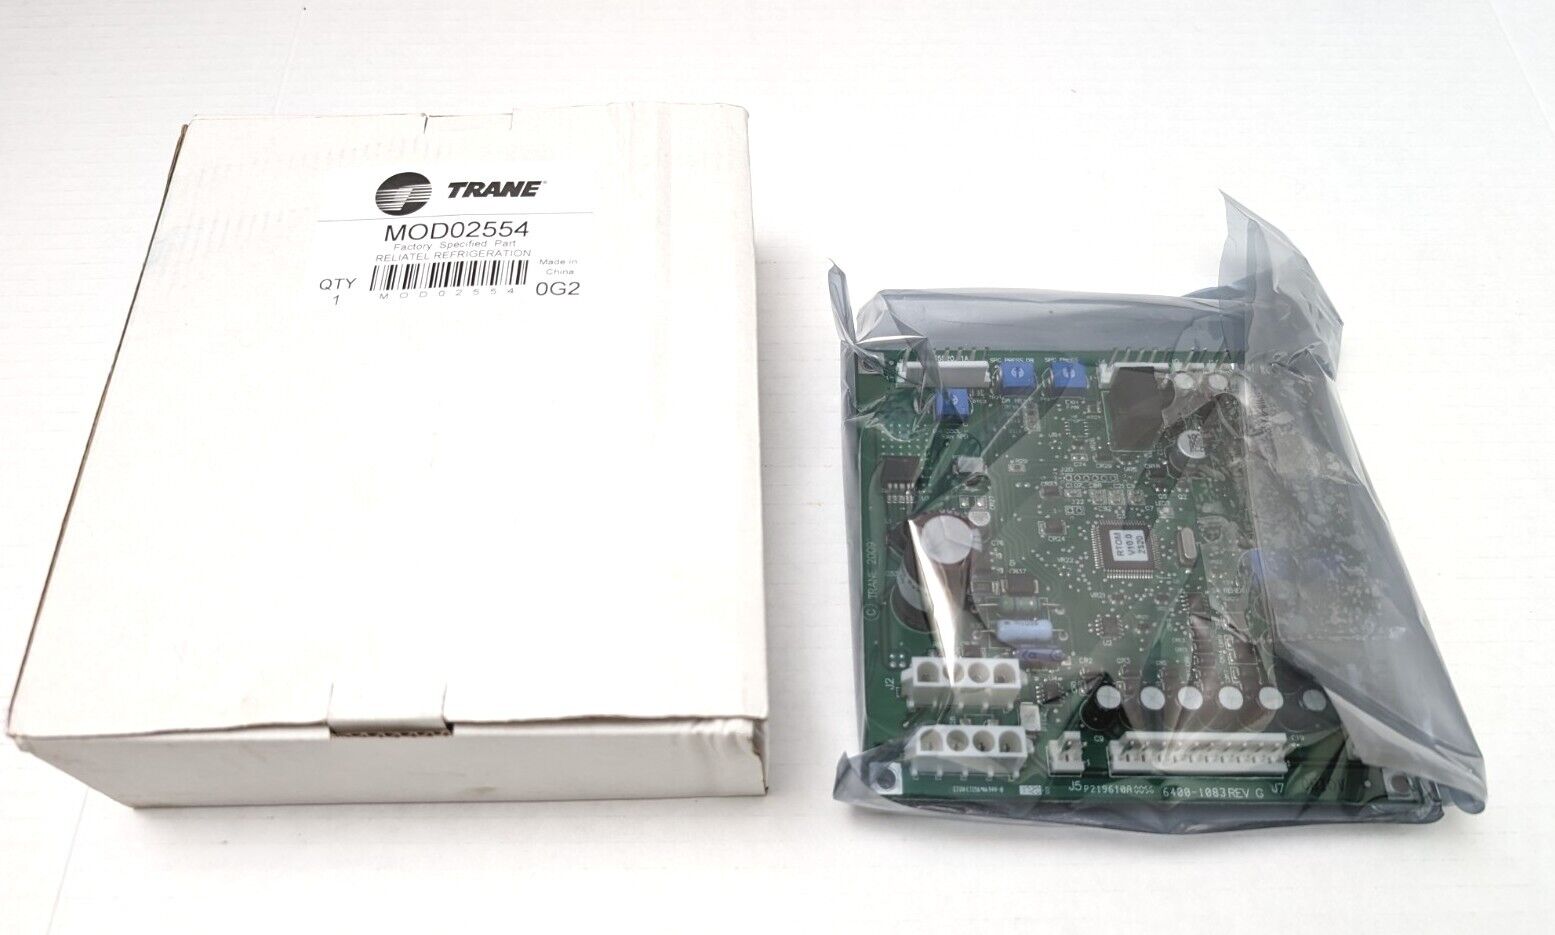 Trane MOD02554 Refrigeration Control Board